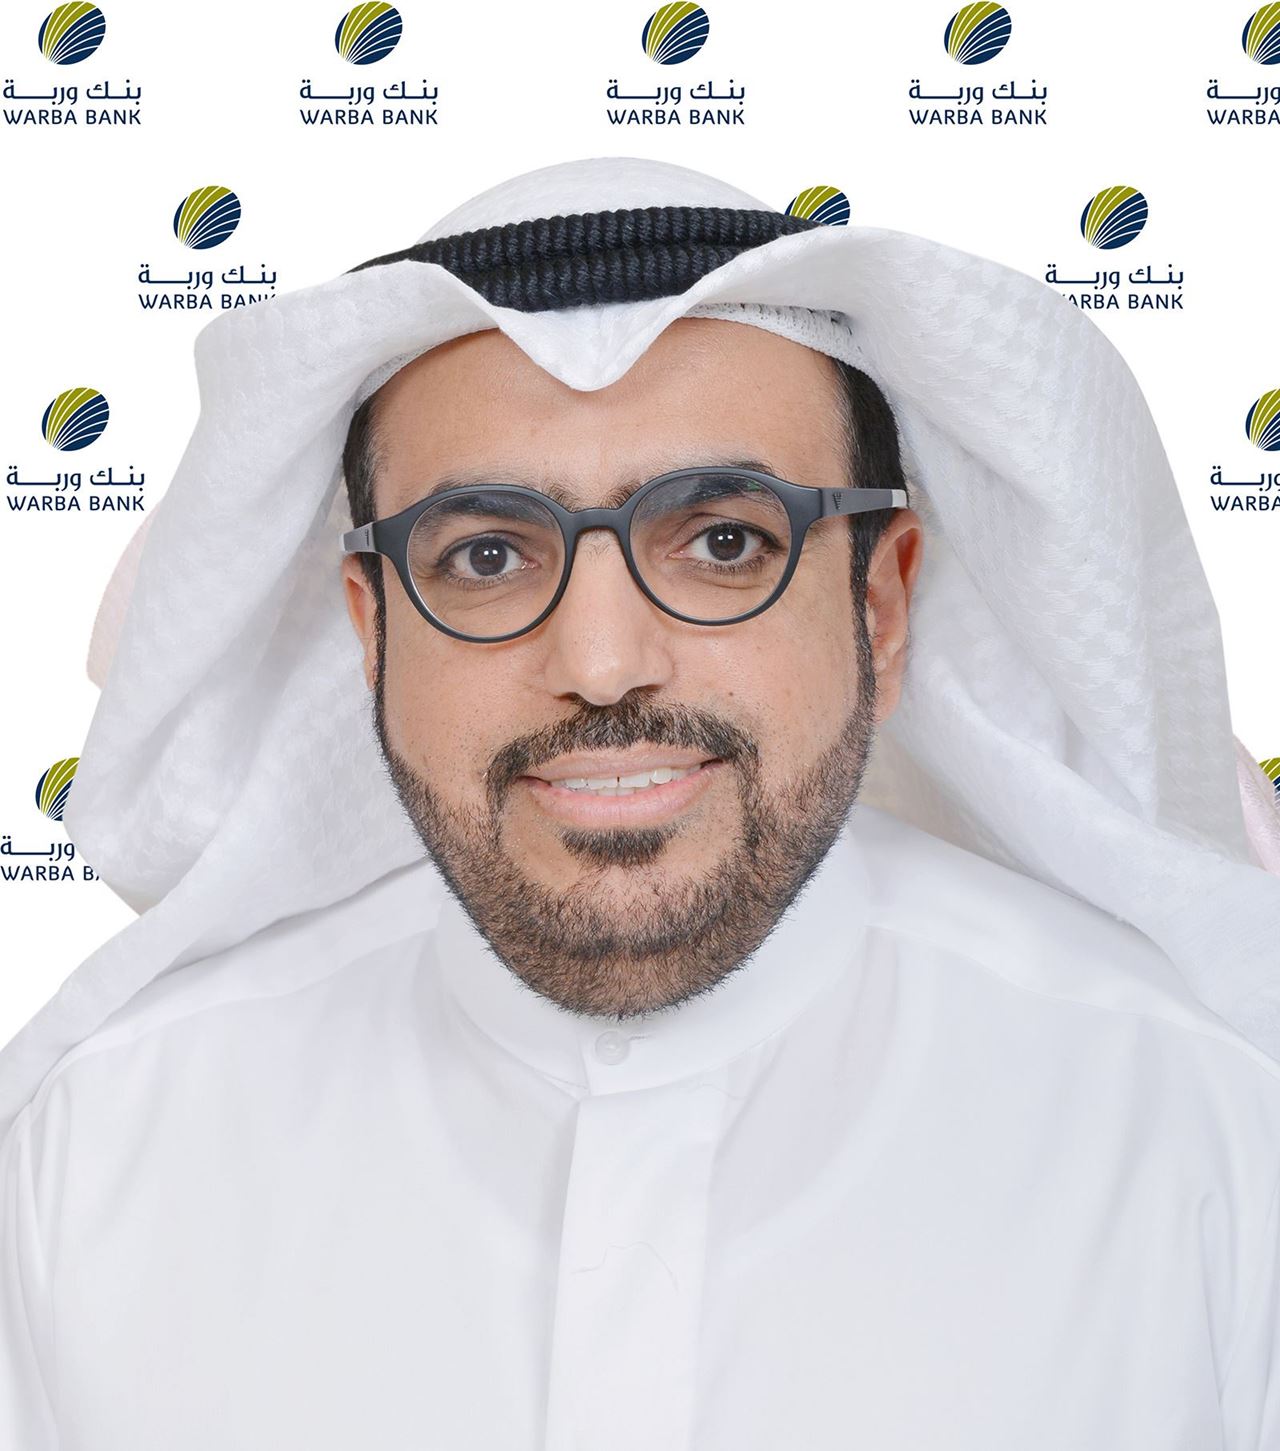 السيد شاهين حمد الغانم، الرئيس التنفيذي لبنك وربة